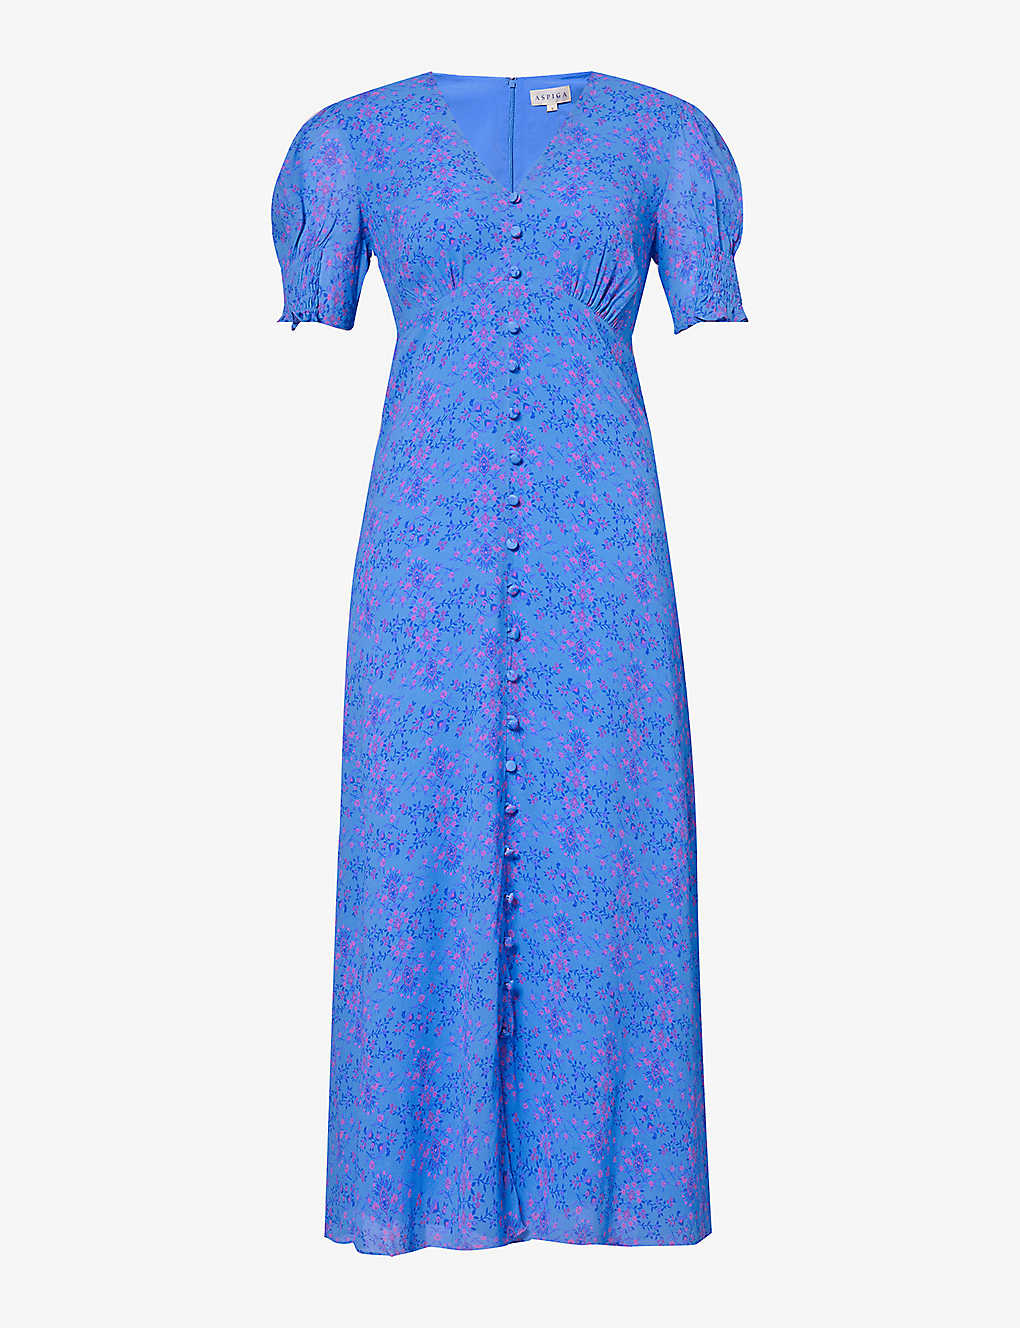 Aspiga Womens Blue Sally Anne Floral-print Woven Midi Dress